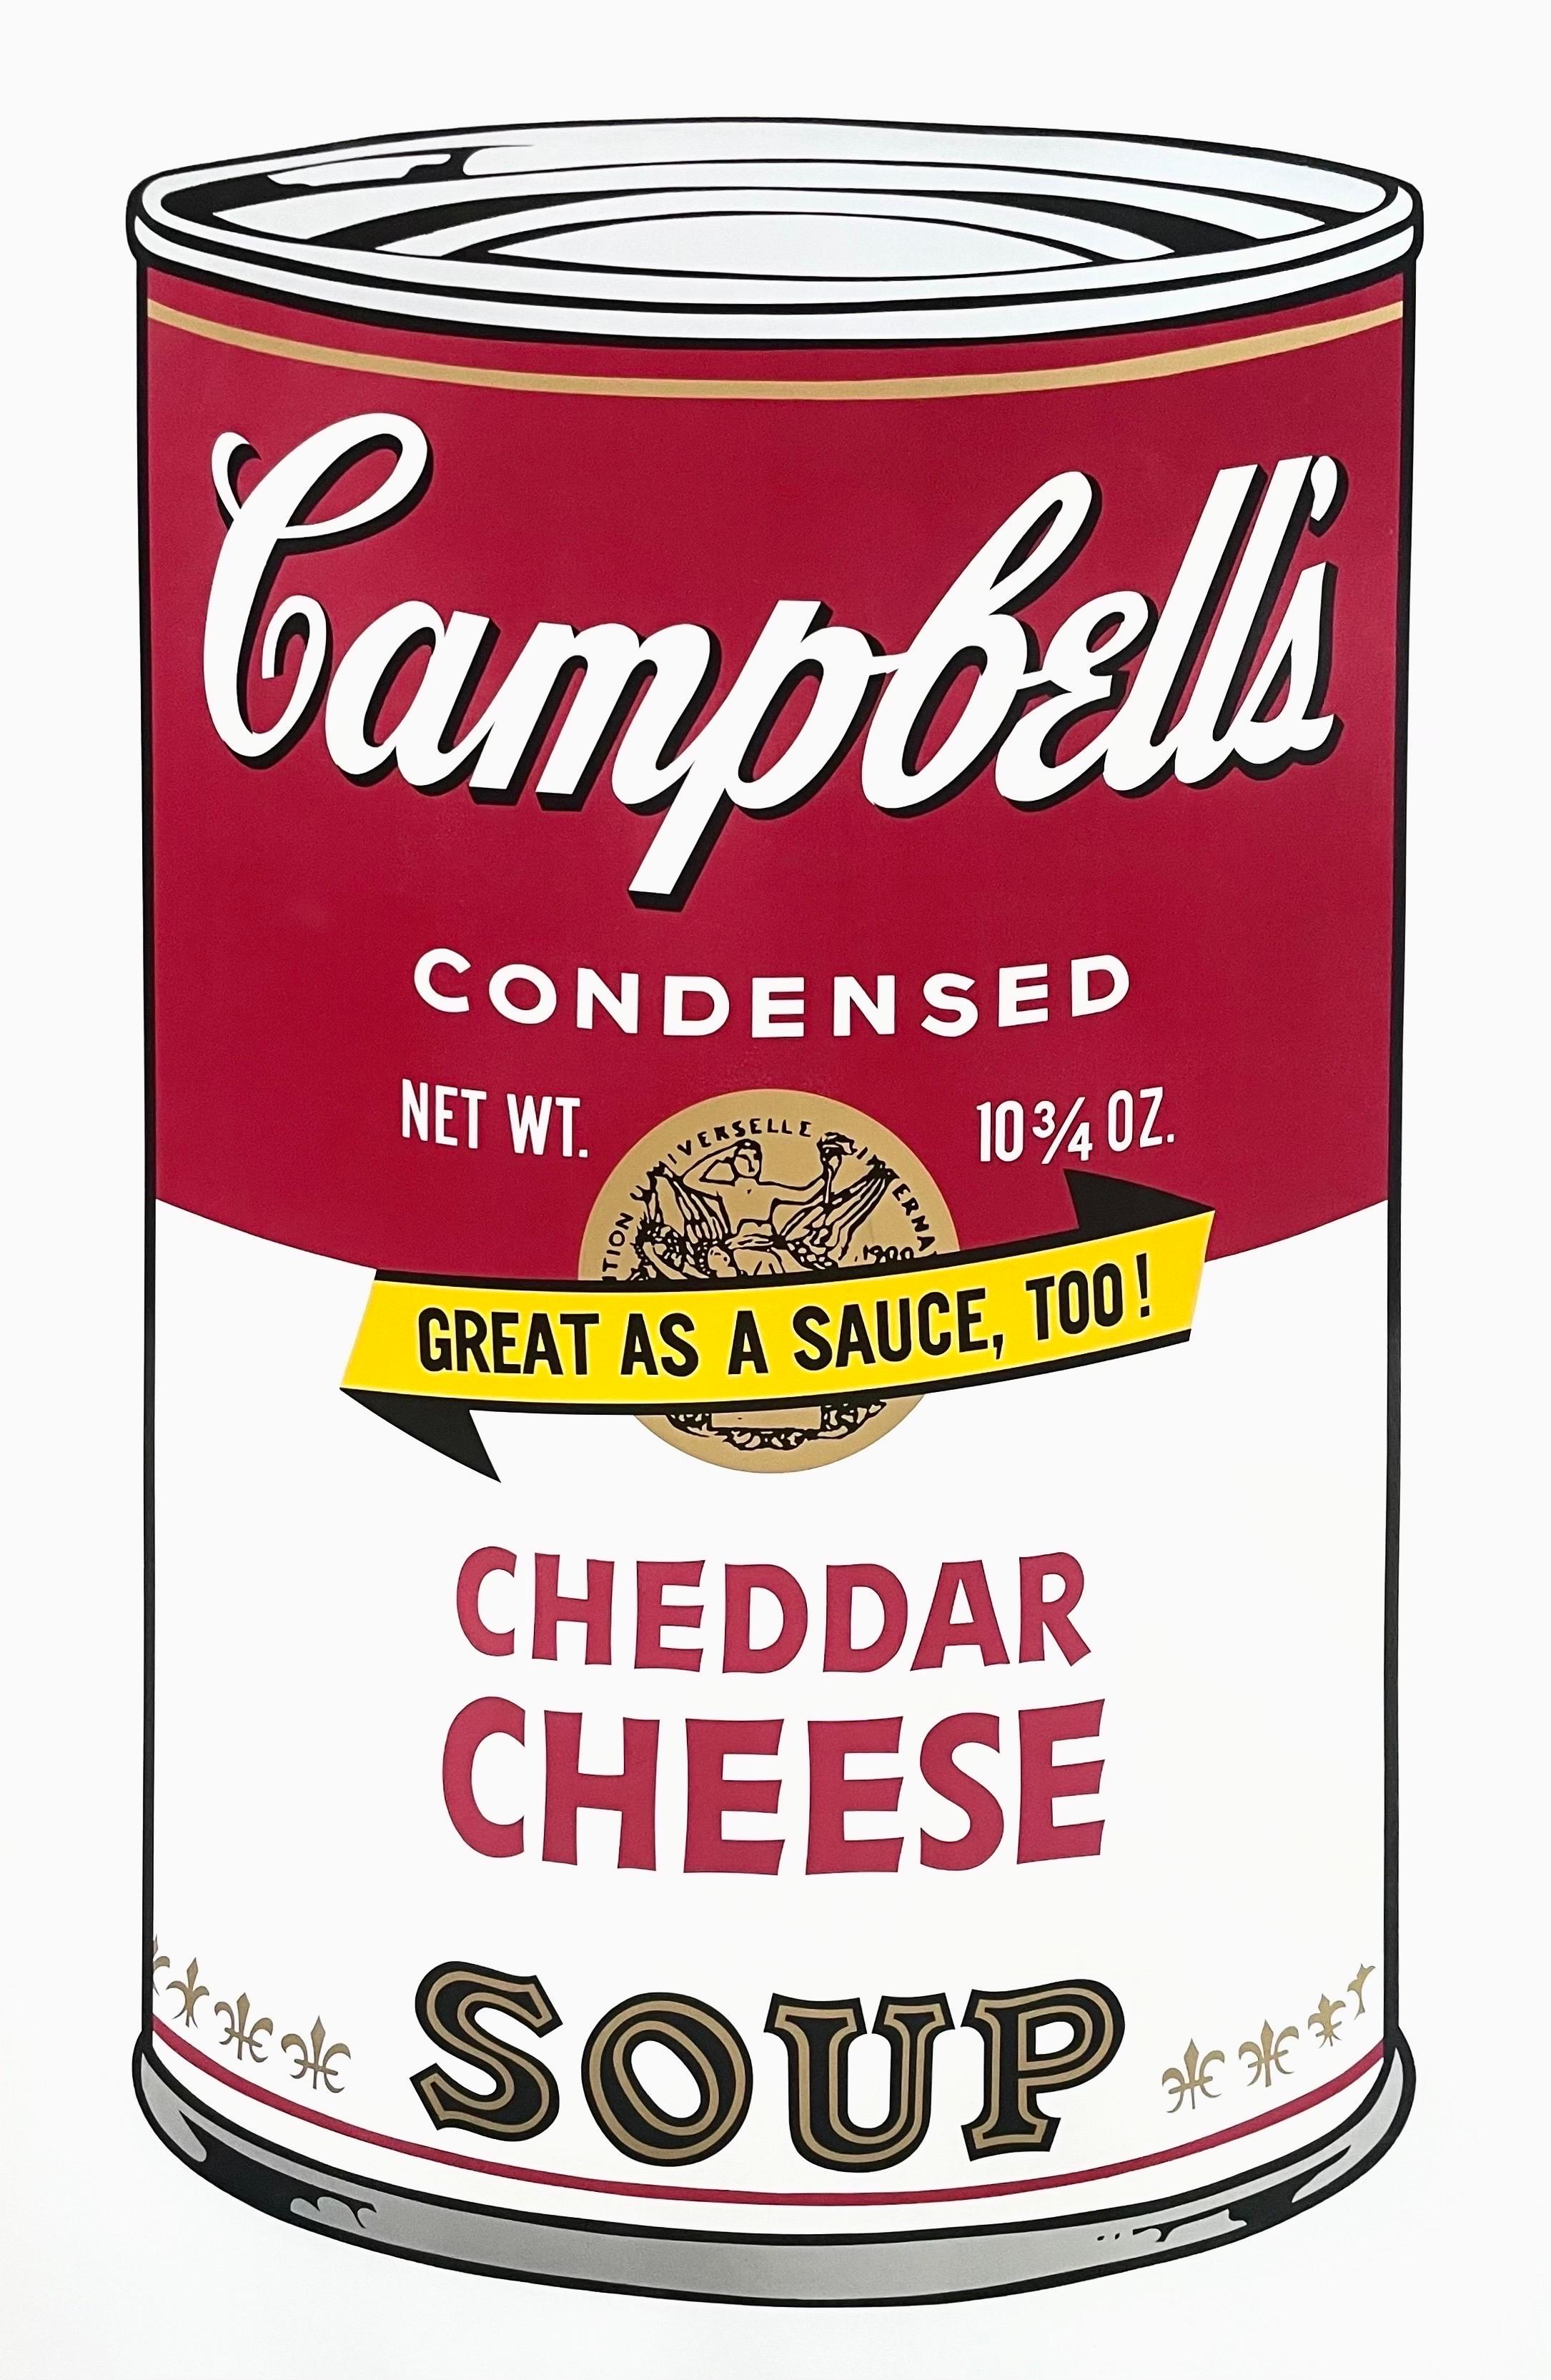 Künstler: Andy Warhol (1928-1987)
Titel: Campbell's Suppe II, Cheddar-Käse (F&S II.63)
Jahr: 1969
Auflage: 250, plus 26 Probedrucke
Medium: Siebdruck auf Velinpapier
Größe: 35 x 23 Zoll
Zustand: Ausgezeichnet
Beschriftung: Rückseitig mit